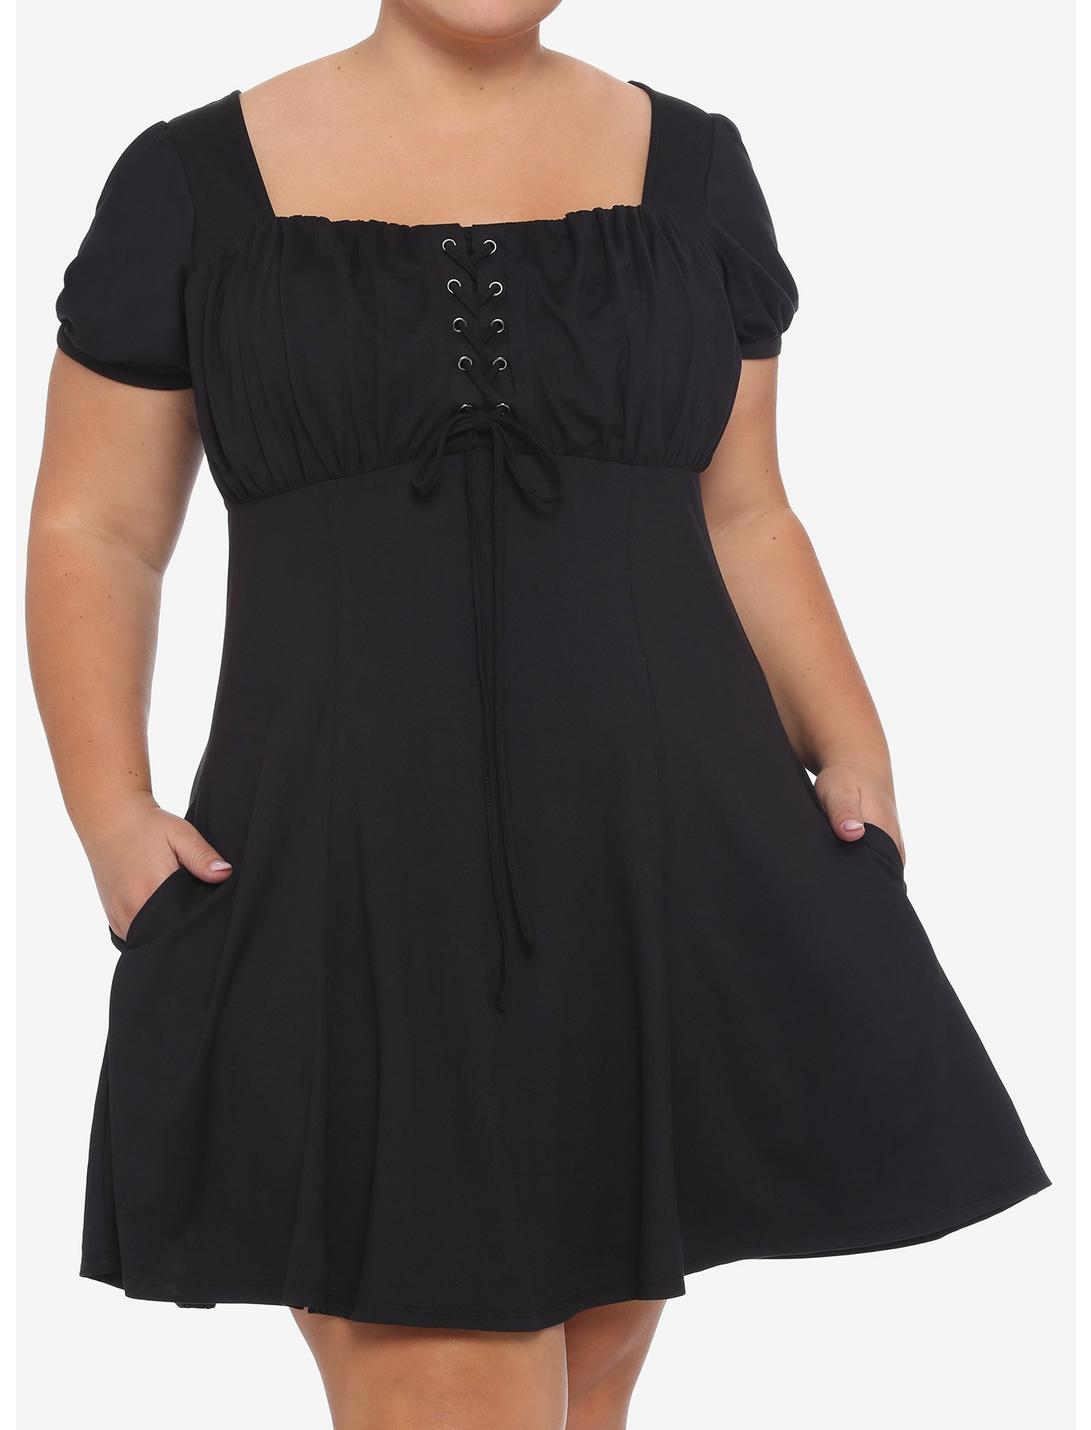 Black Empire Waist Dress Plus Size